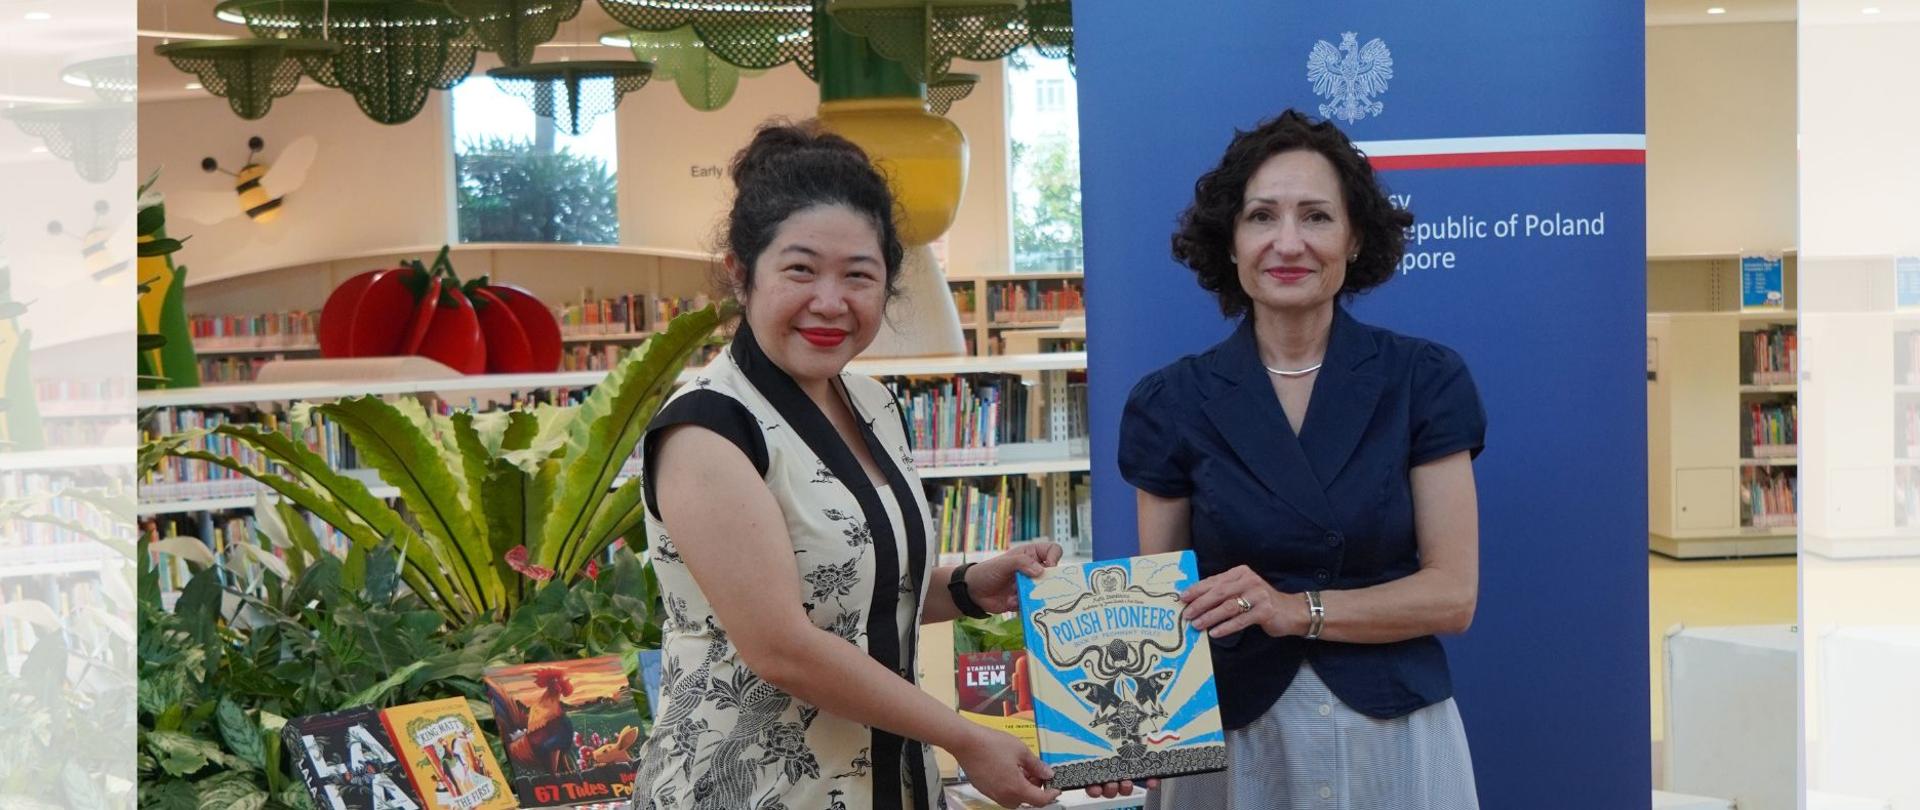 Przekazanie polskich książek NLB Singapore - Ambasador Magdalena Bogdziewicz i dyrektor z NLB Partnership & Strategy Group, pani Soh Lin Li 